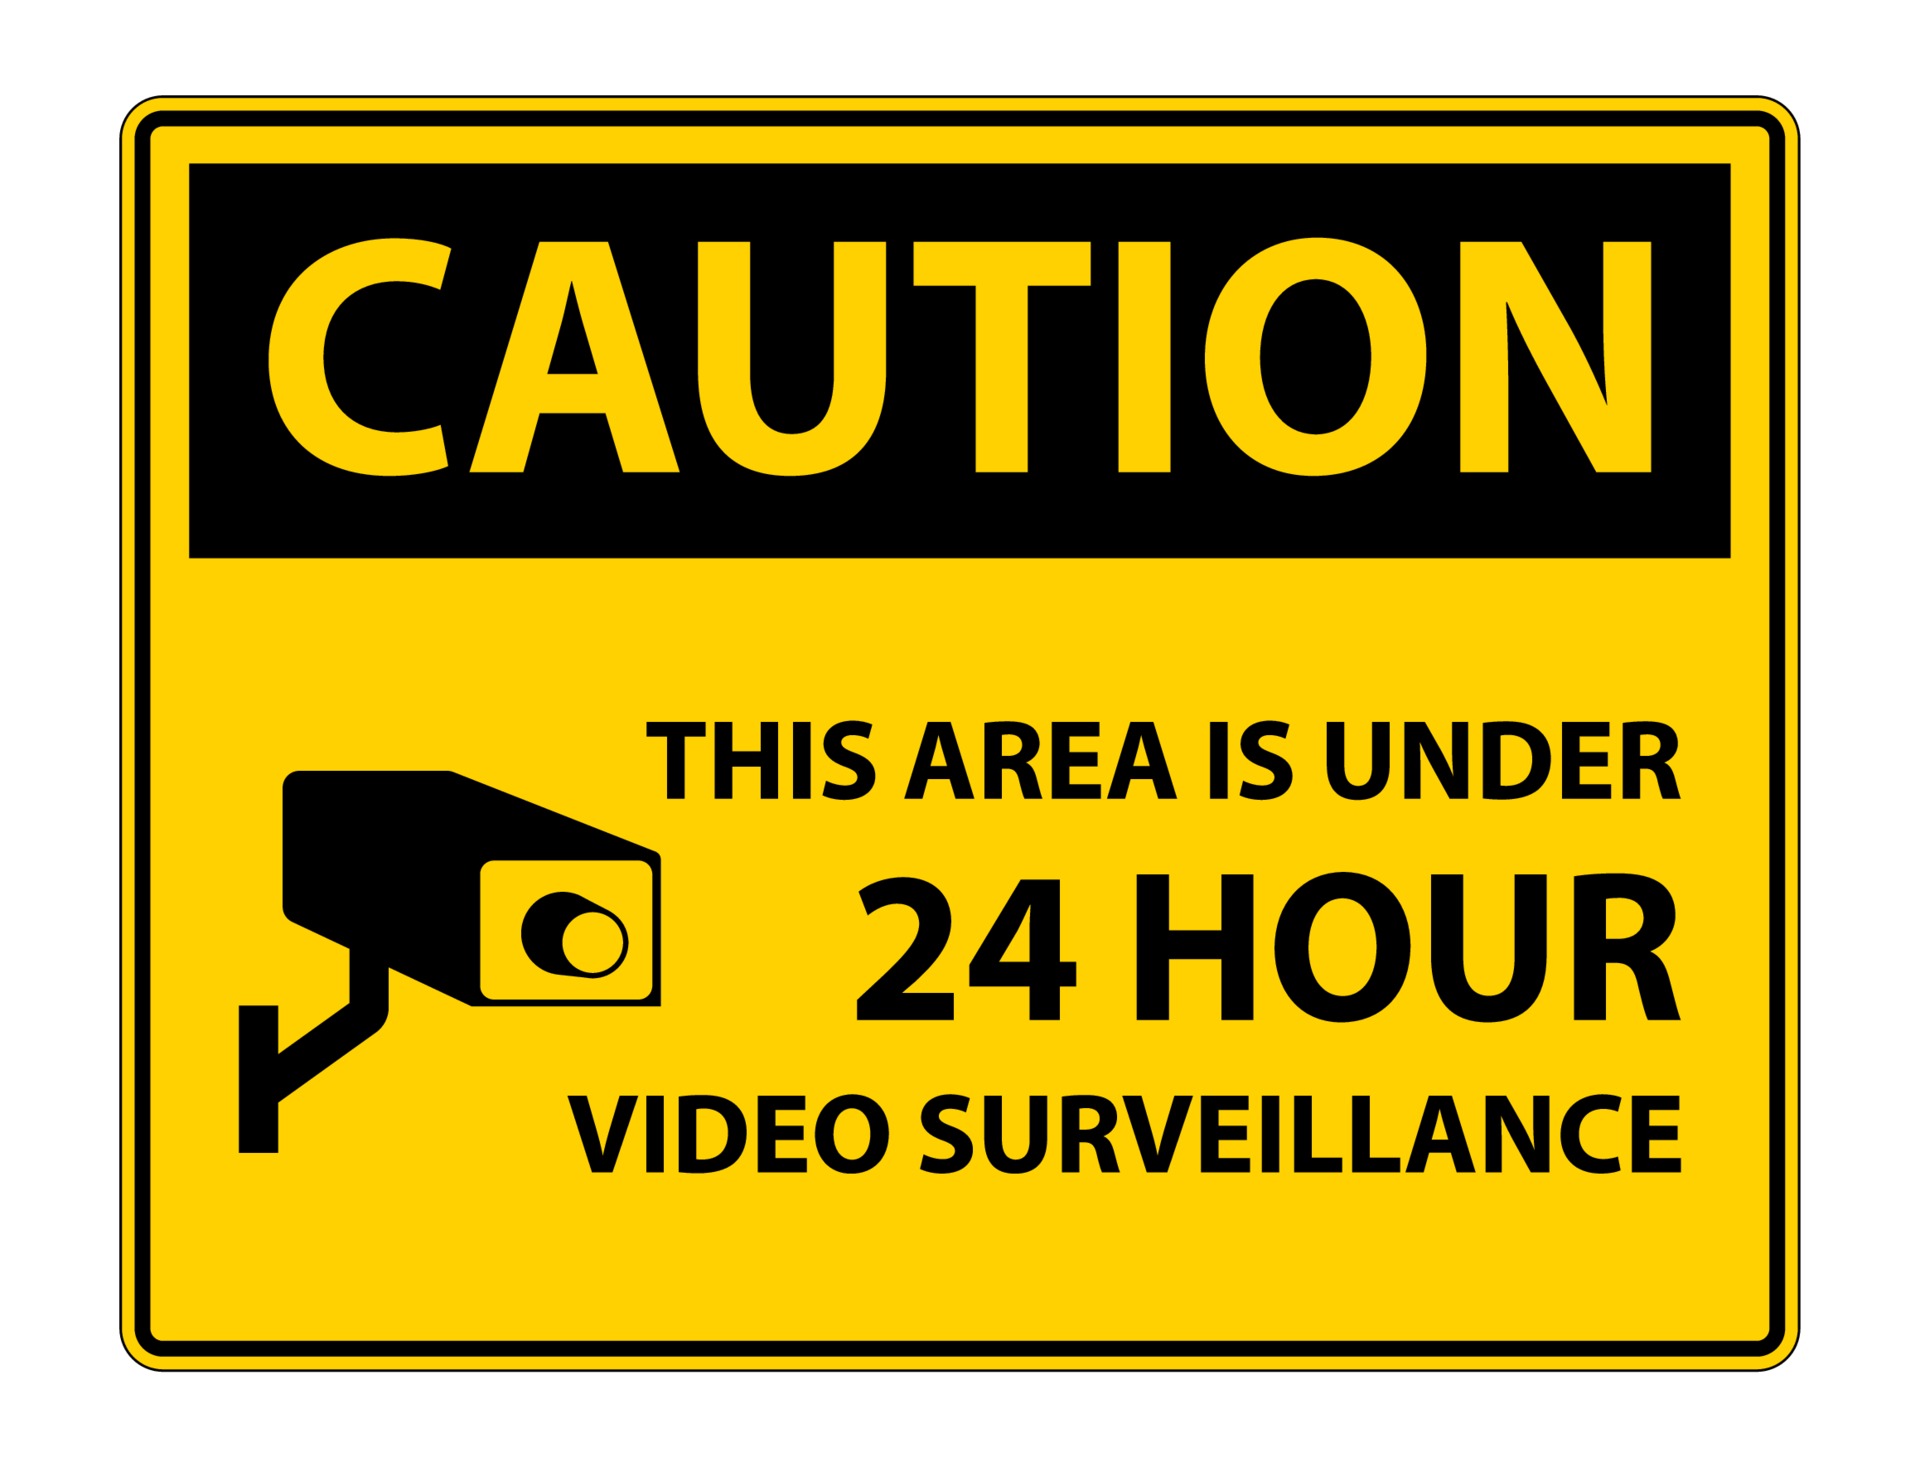 Hãy bảo vệ tài sản và đối tượng giám sát của bạn với biểu tượng cảnh báo giám sát video 24 giờ. Với màu sắc rực rỡ và thiết kế tinh tế, biểu tượng này là một lời nhắc nhở để giữ an ninh và trật tự trong mọi hoàn cảnh.